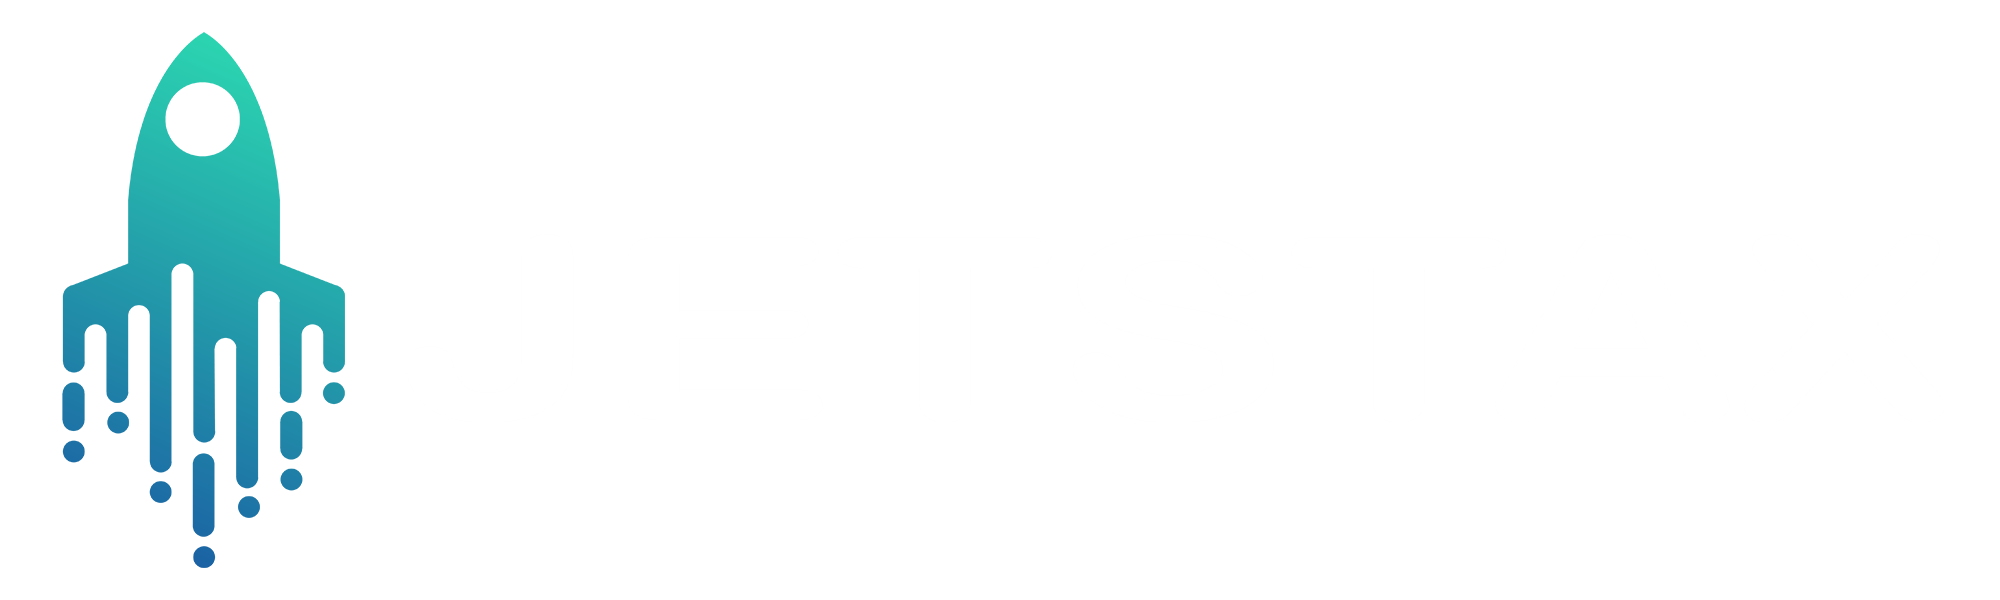 Jetstax